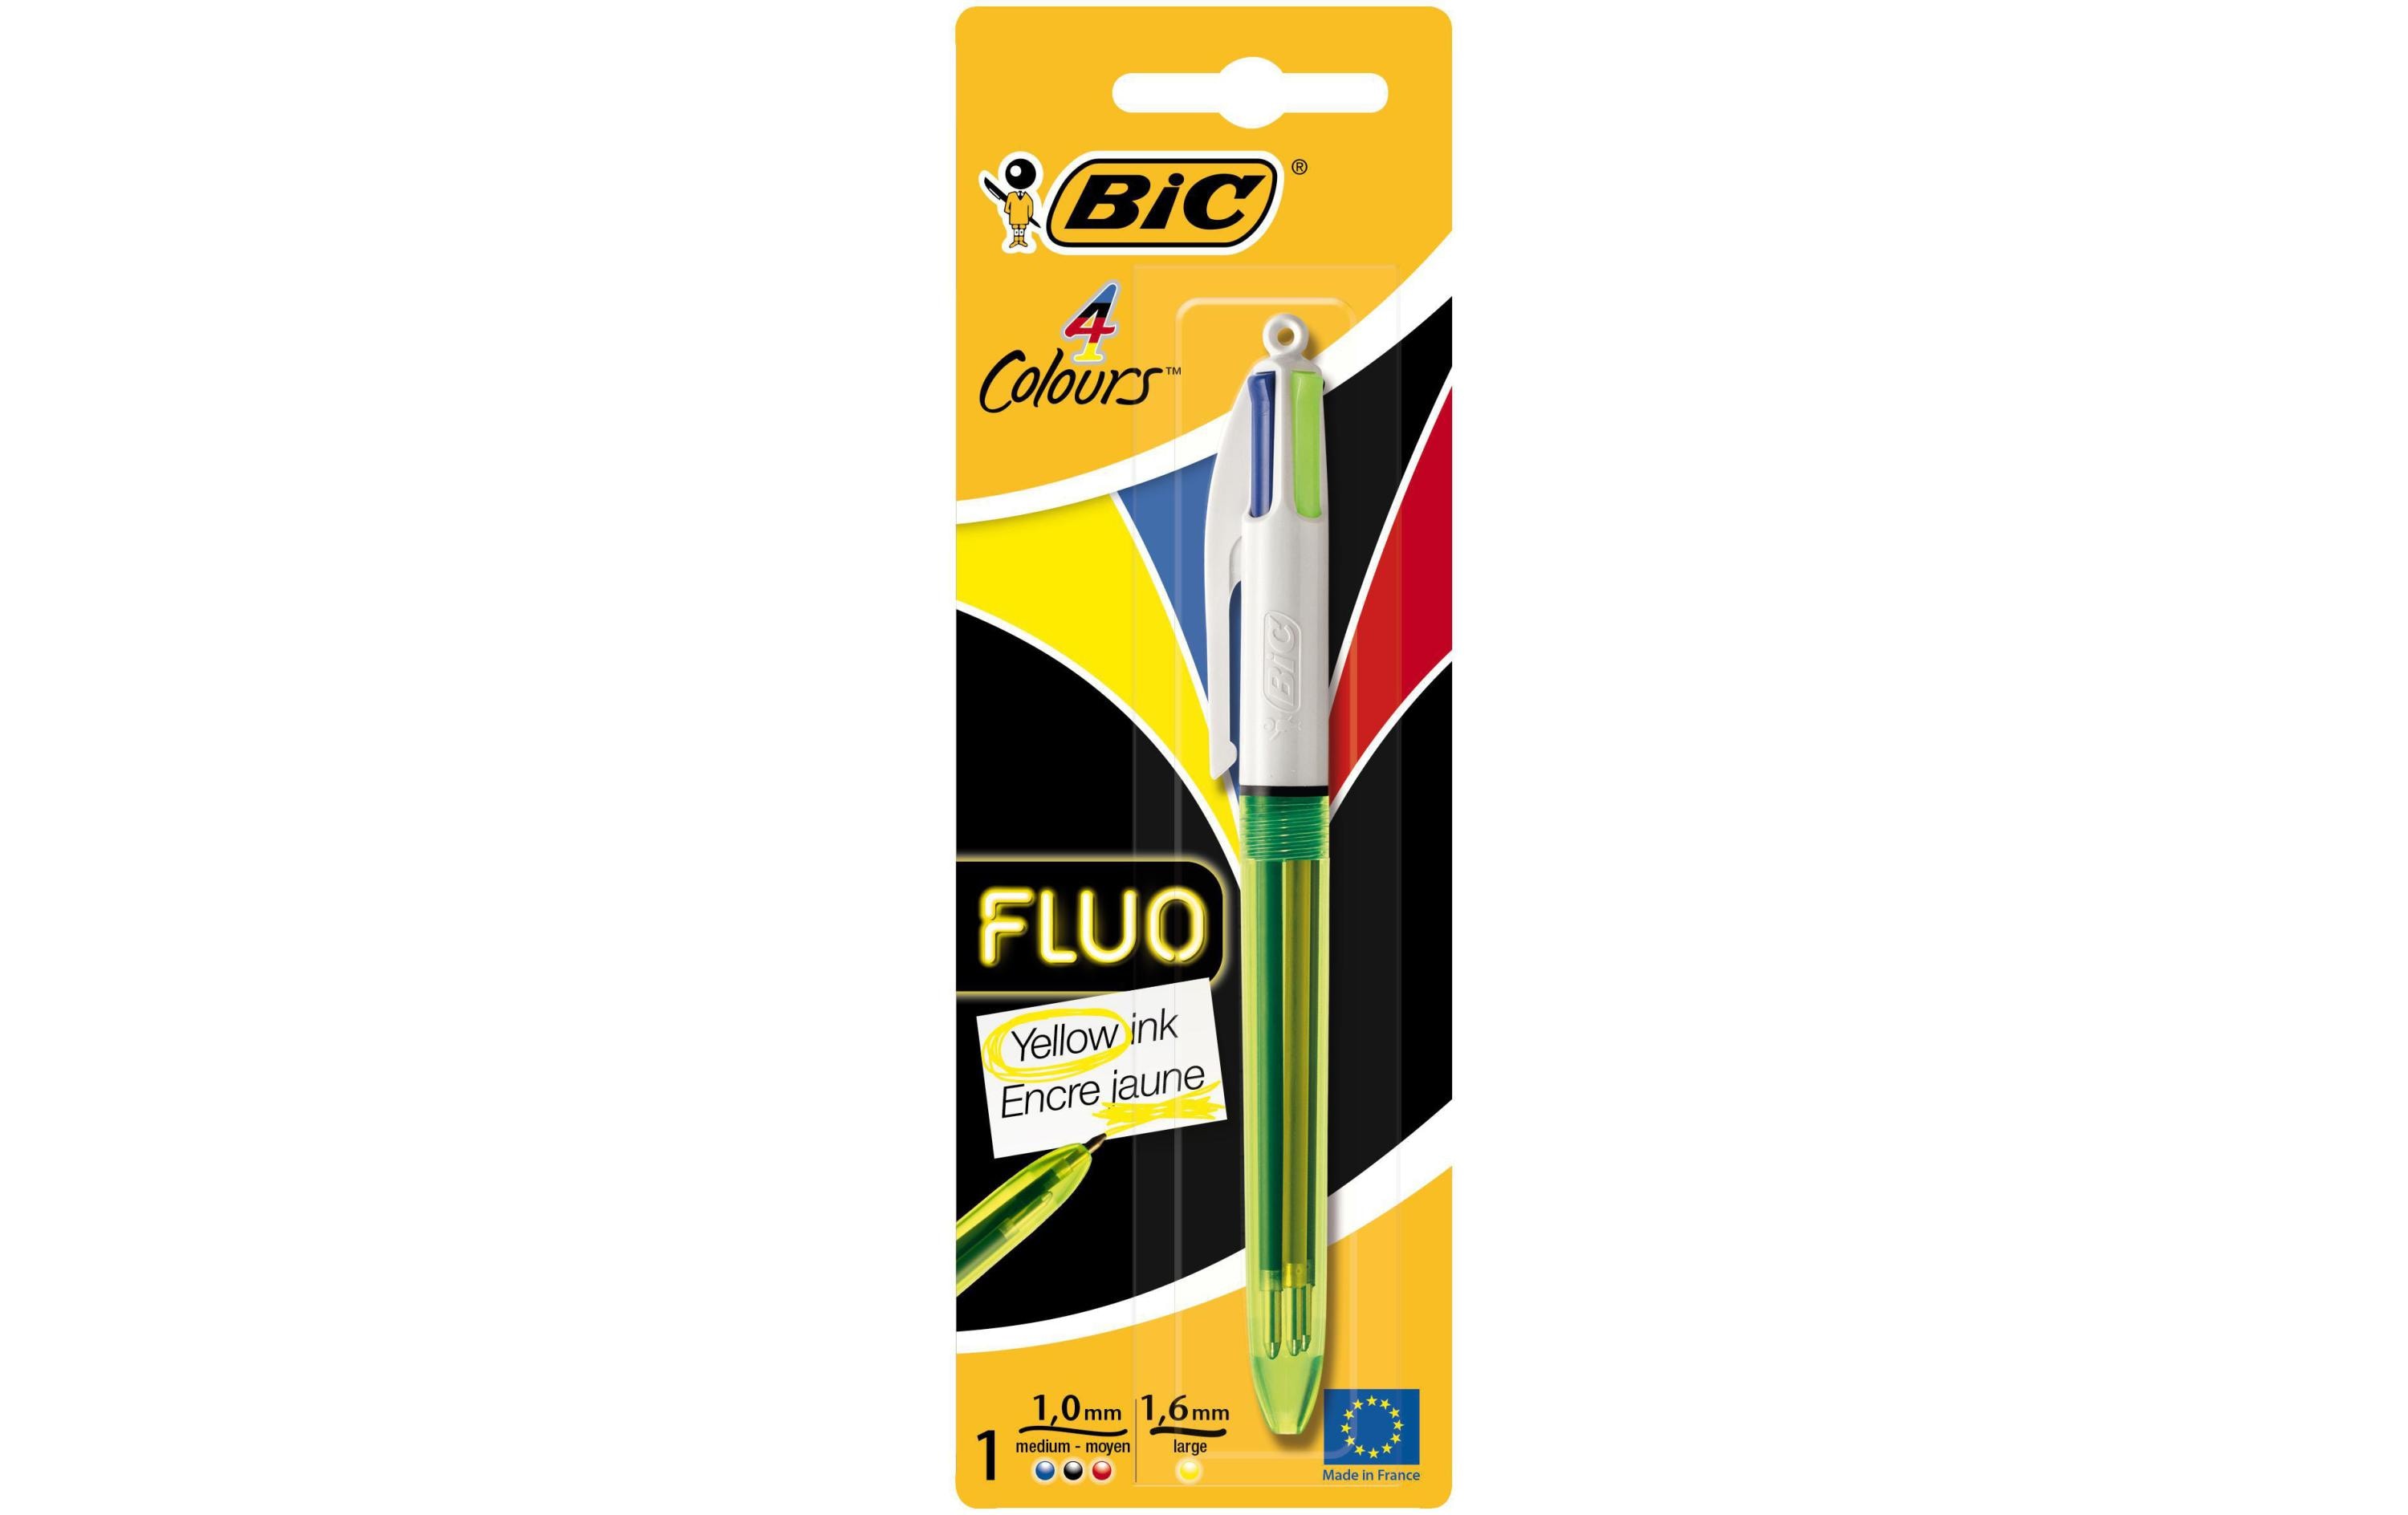 BIC Mehrfarbenkugelschreiber 4 Colours Fluo mit Marker